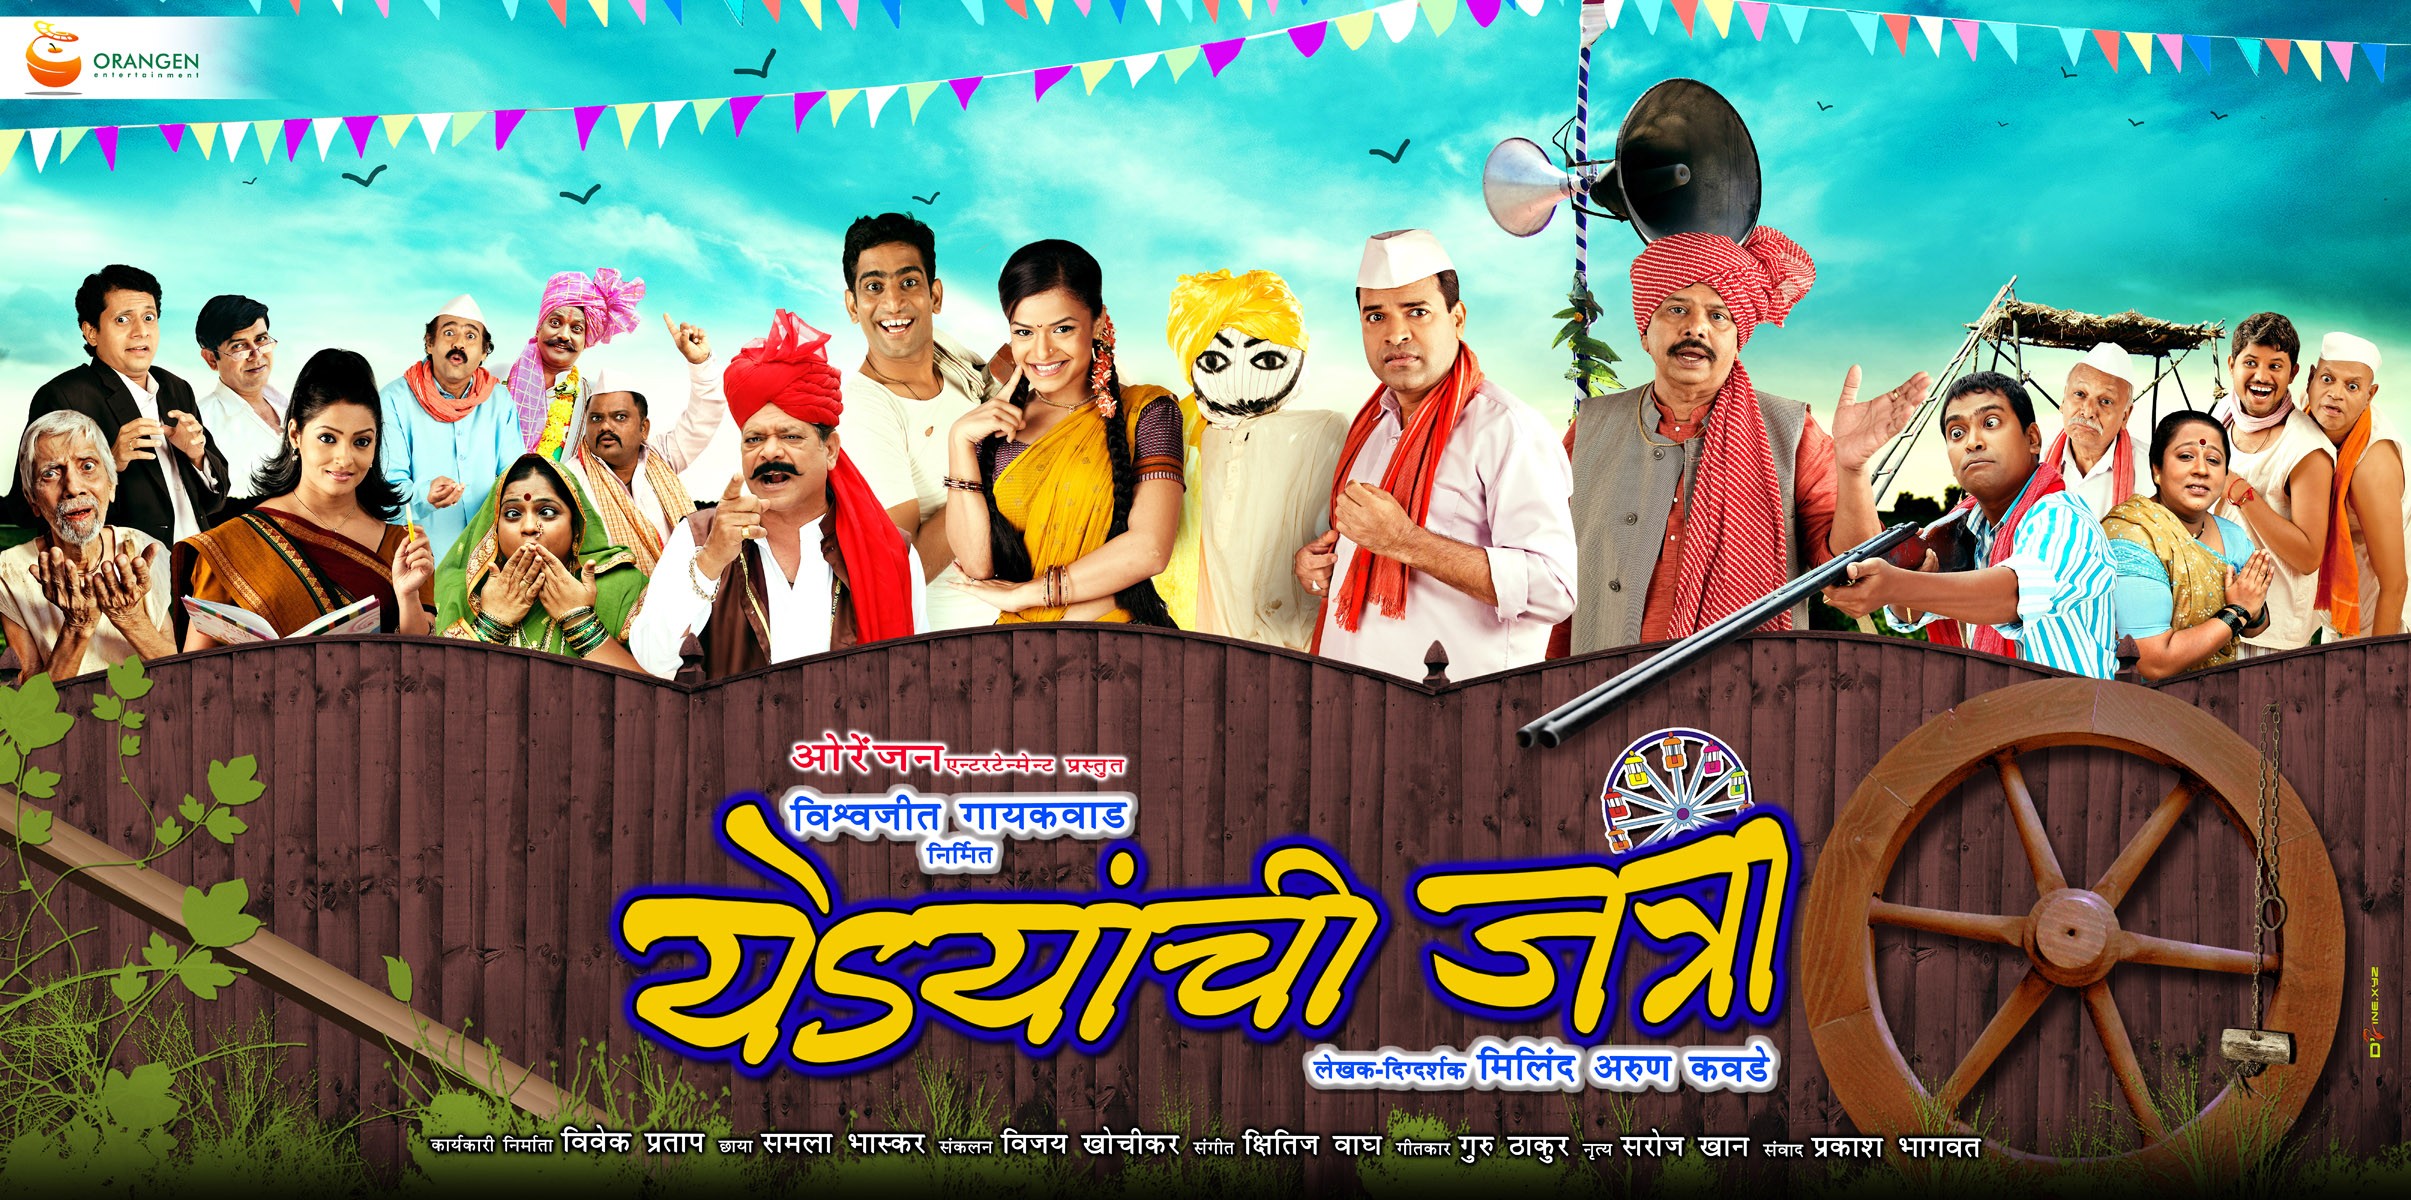 Mega Sized Movie Poster Image for Yedyanchi Jatraa (#1 of 7)